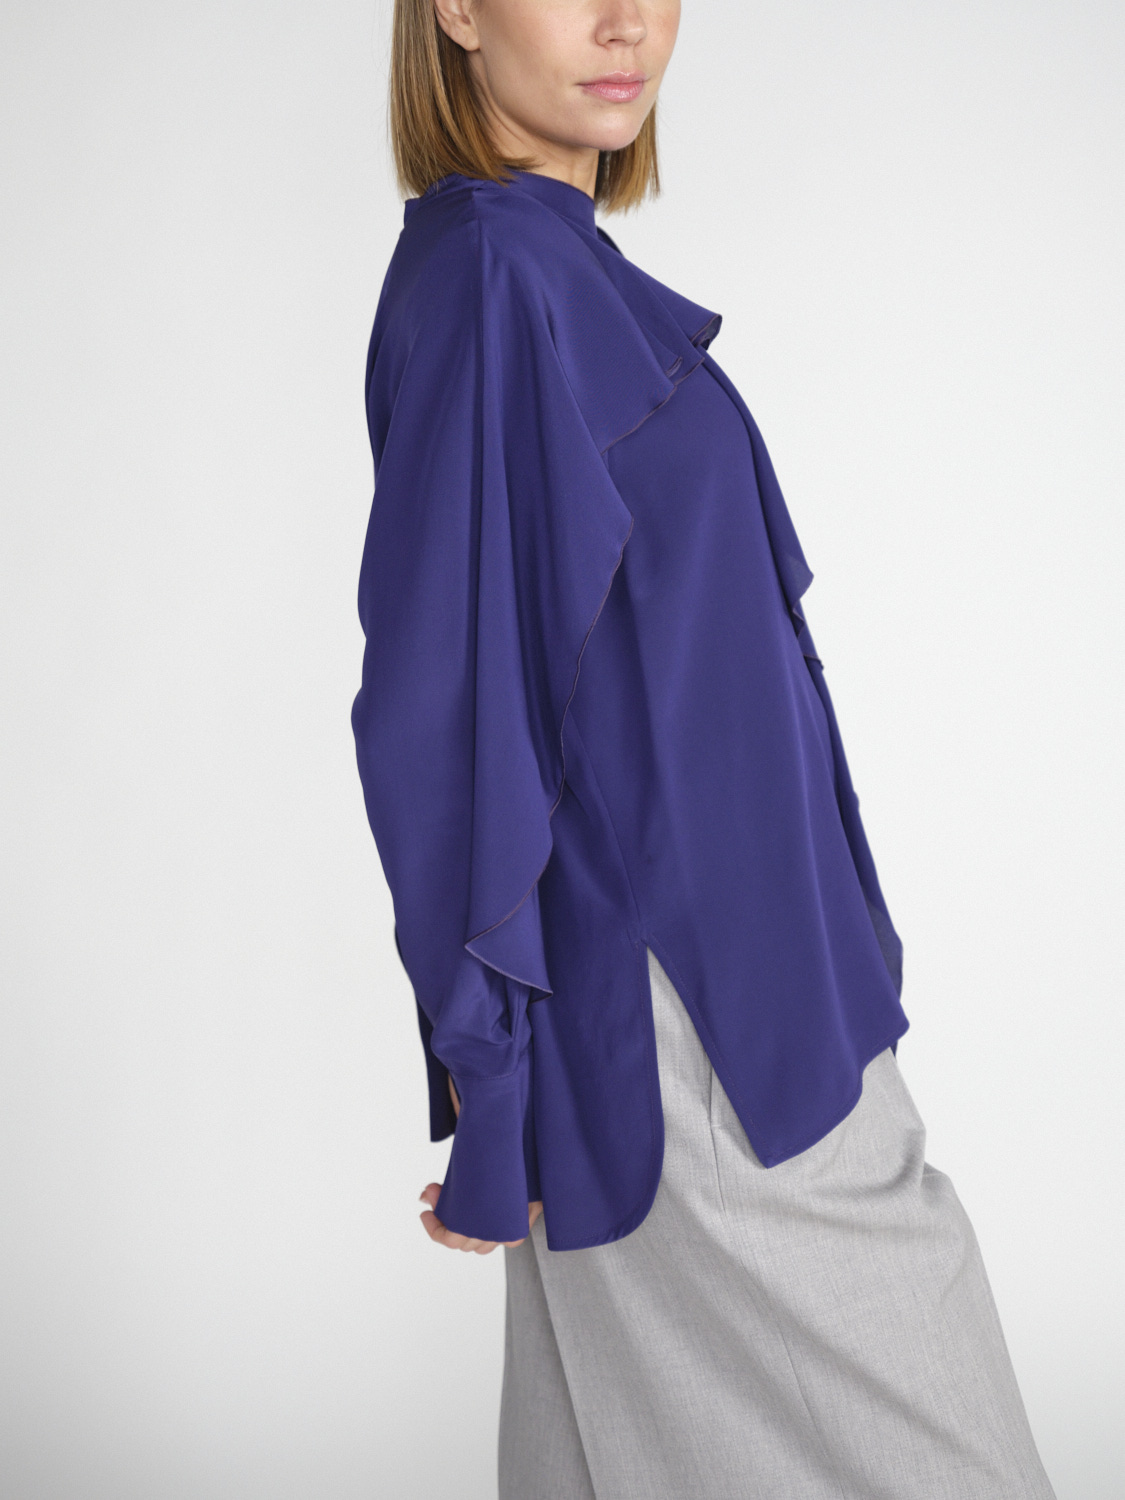 Victoria Beckham Romantic - Crêpe silk blouse with flounce details  purple 36